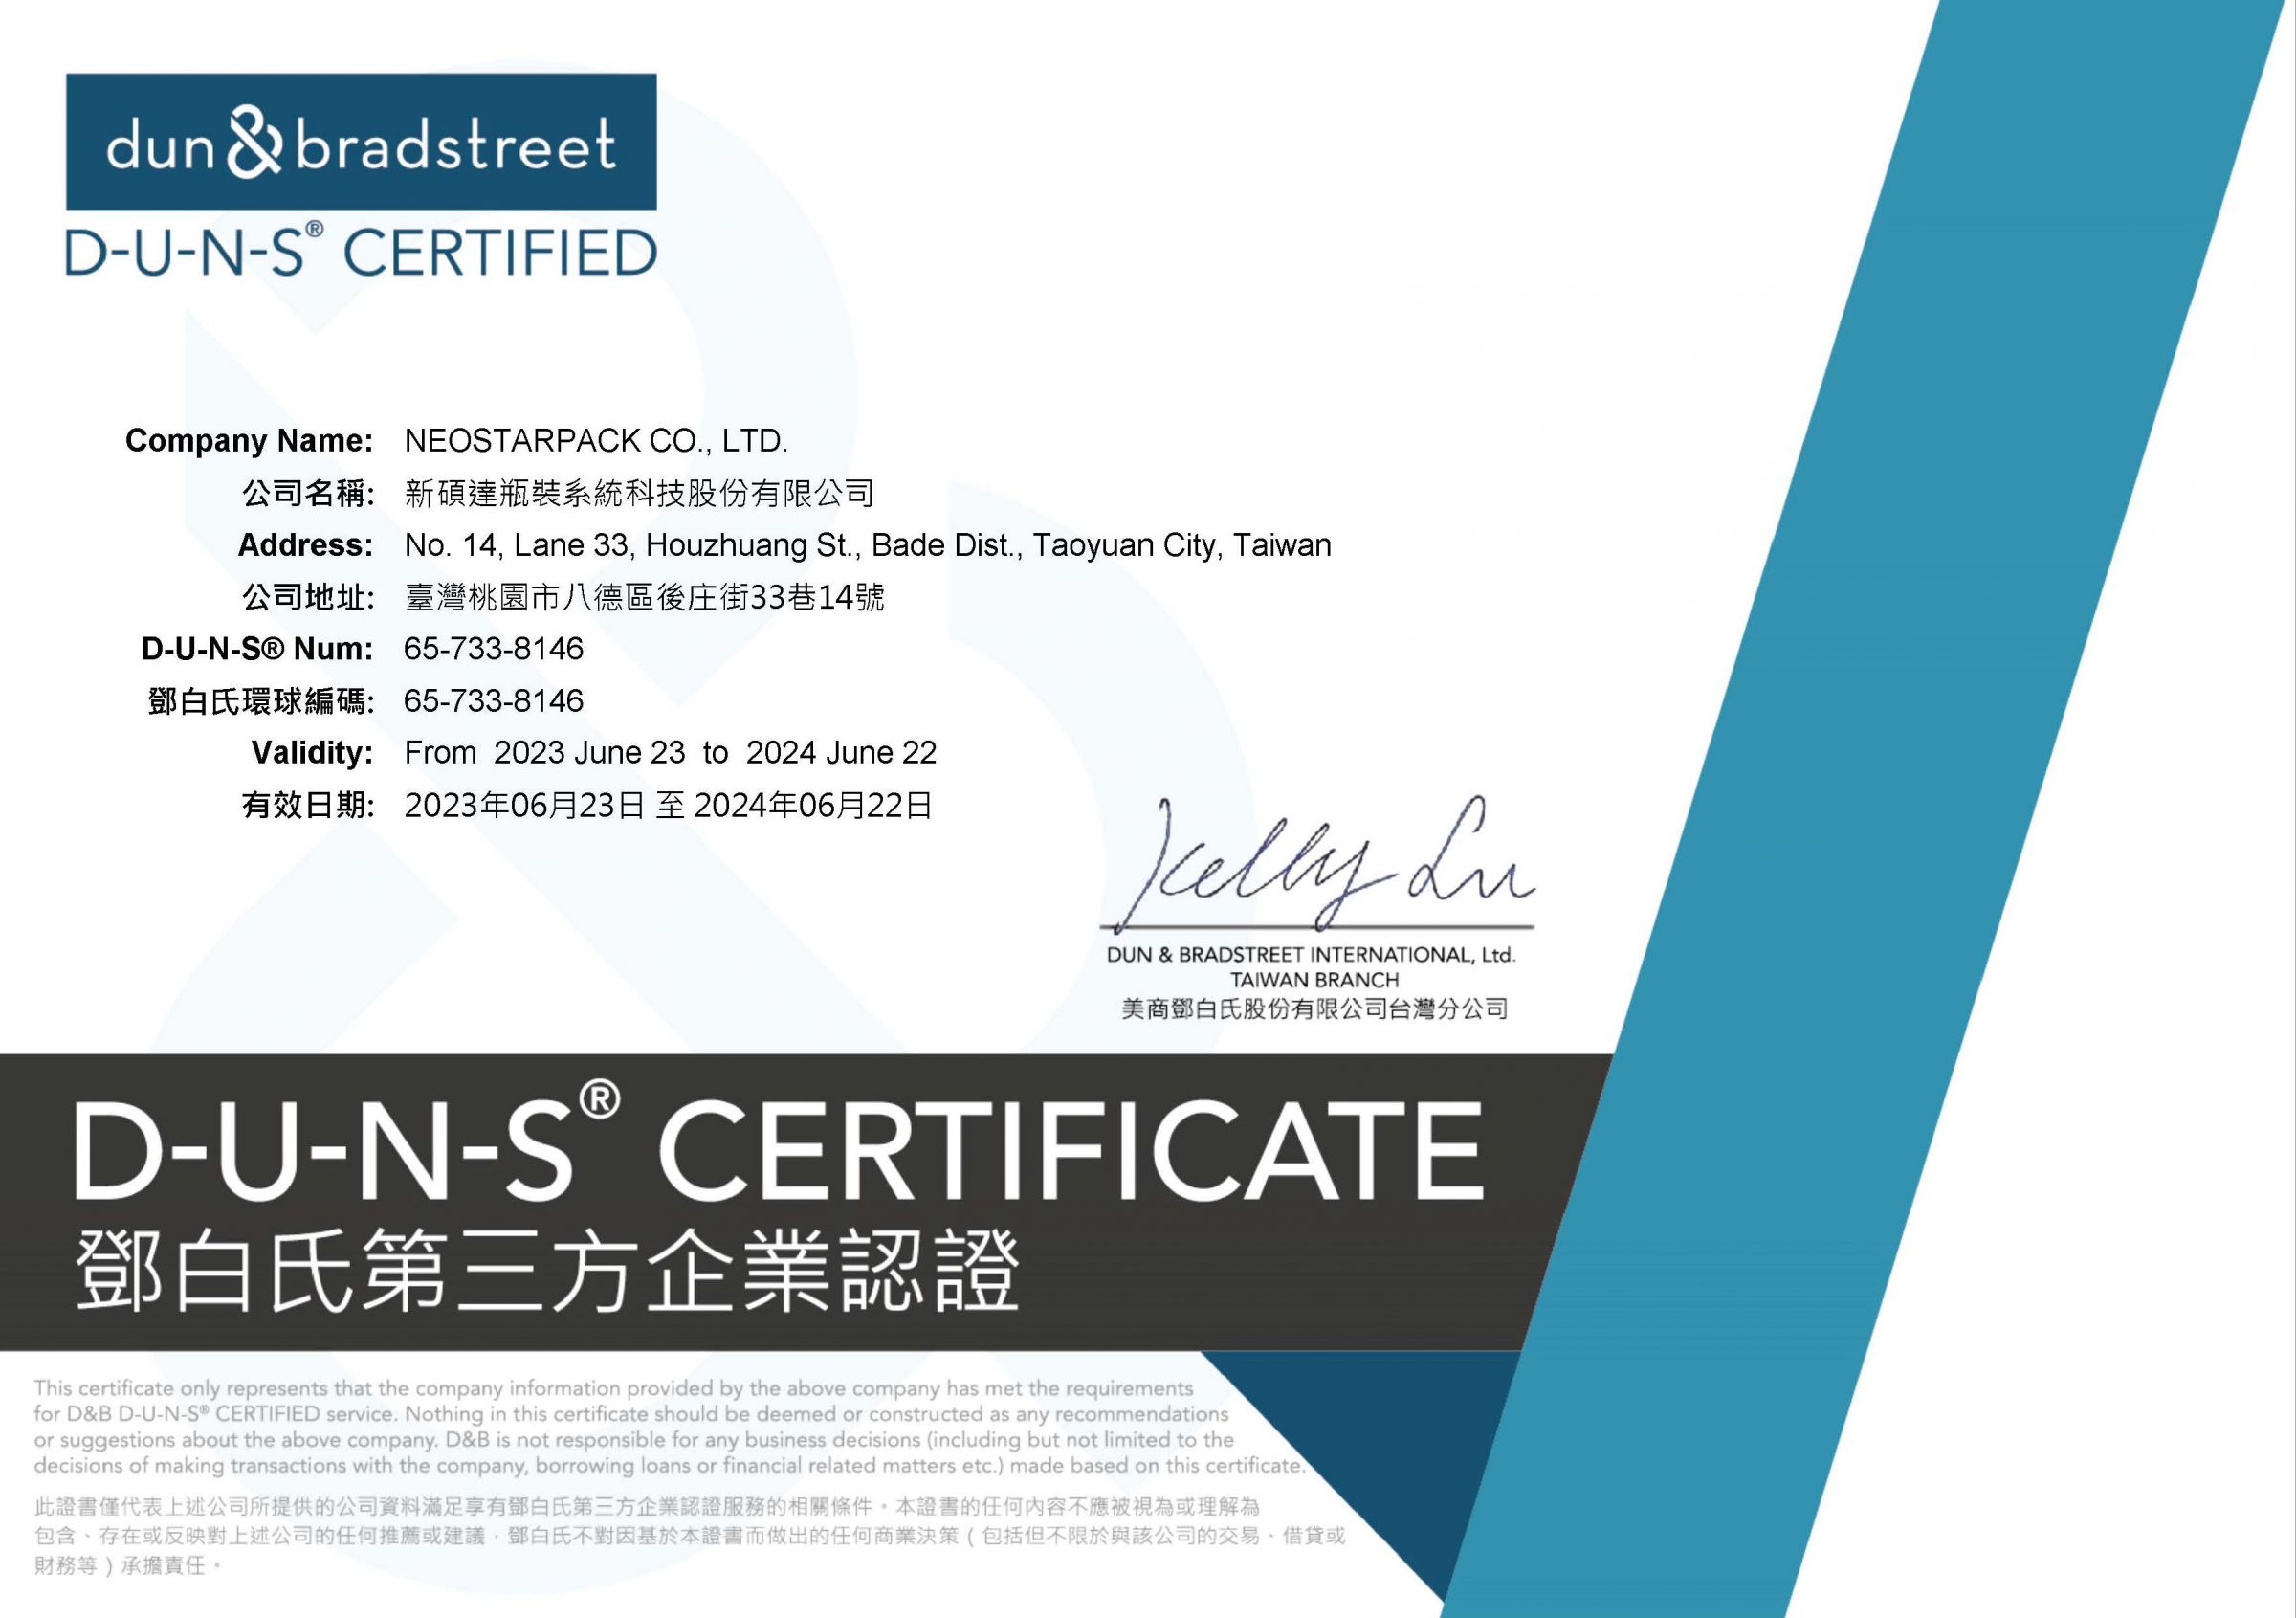 Neostarpack D&B D-U-N-S Certificate